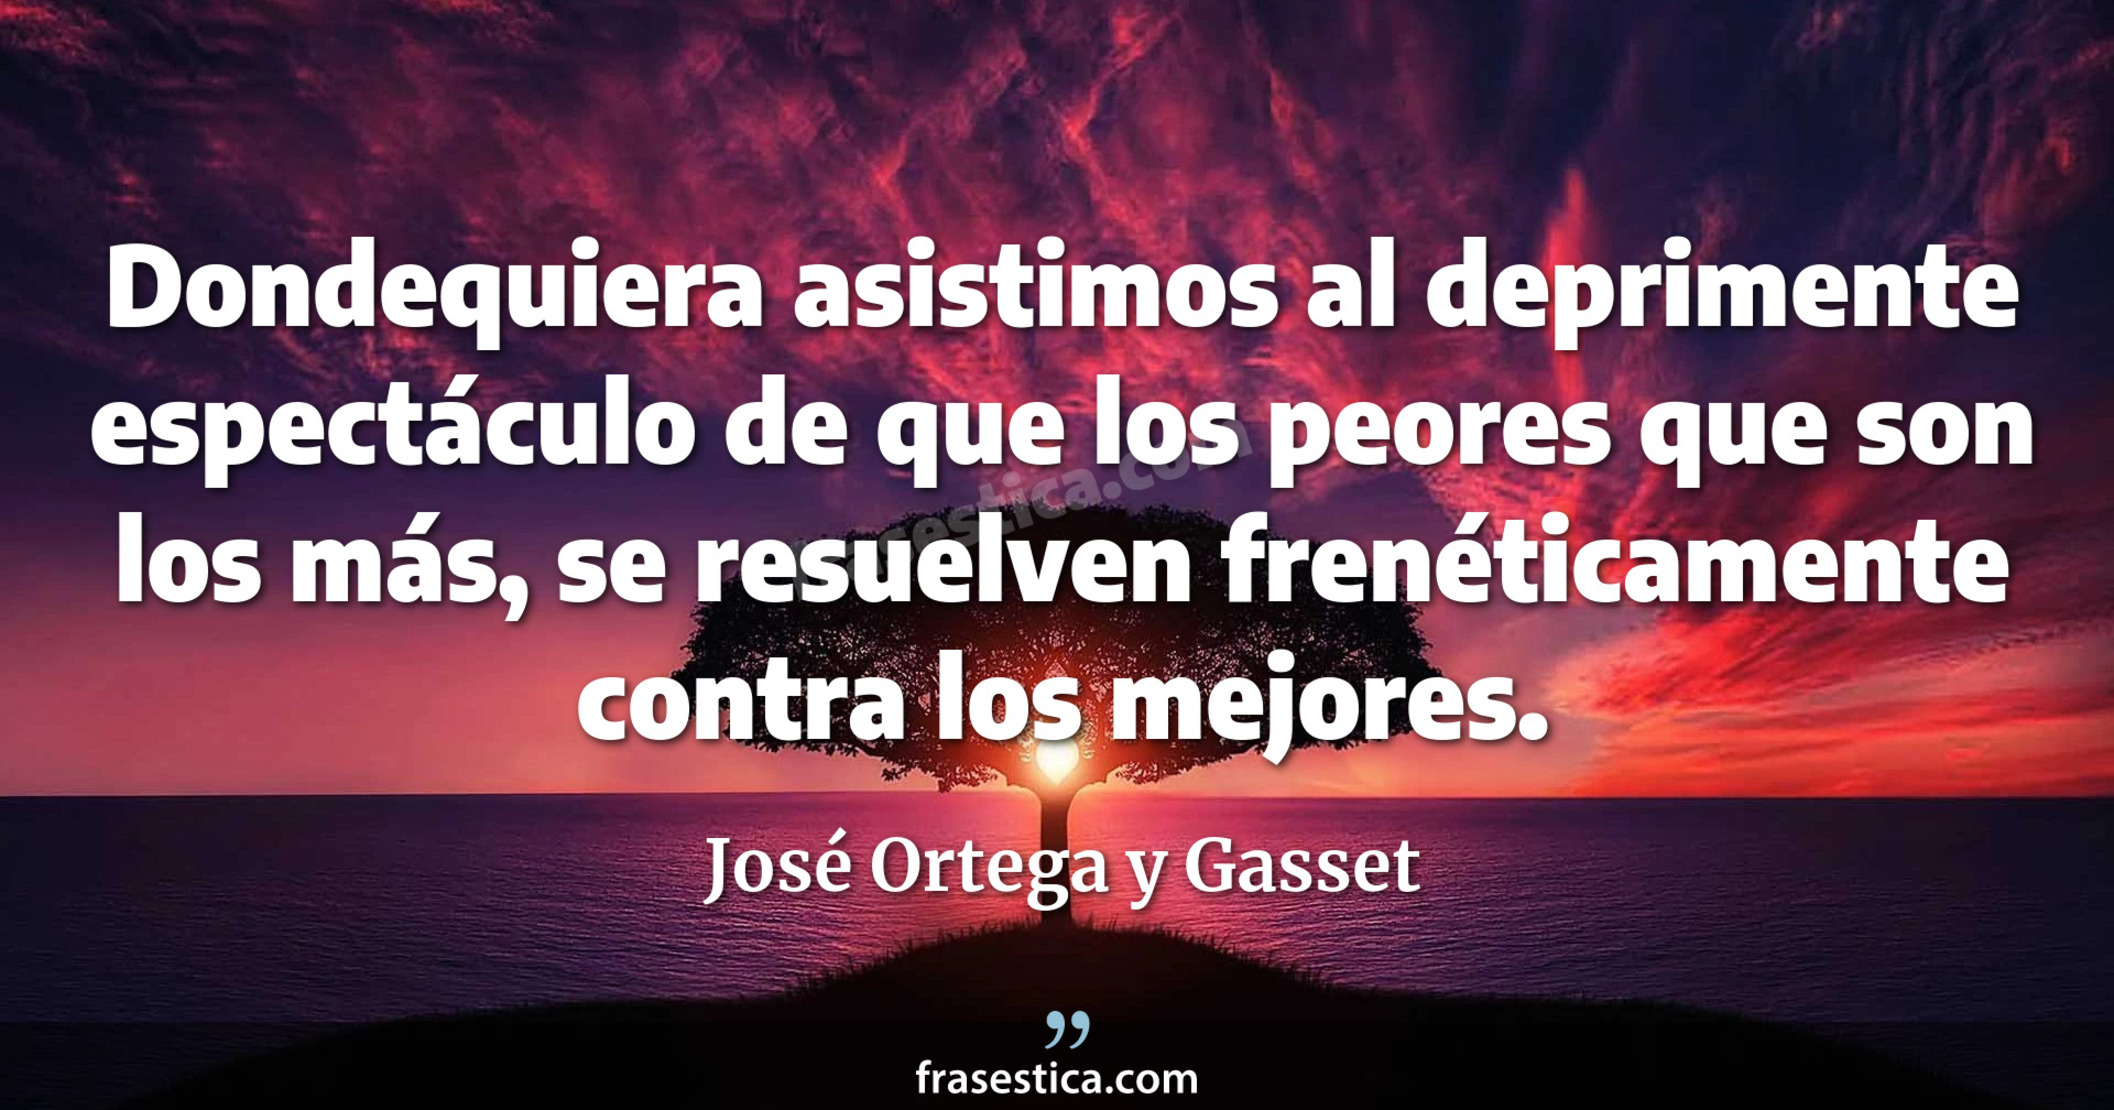 Dondequiera asistimos al deprimente espectáculo de que los peores que son los más, se resuelven frenéticamente contra los mejores. - José Ortega y Gasset